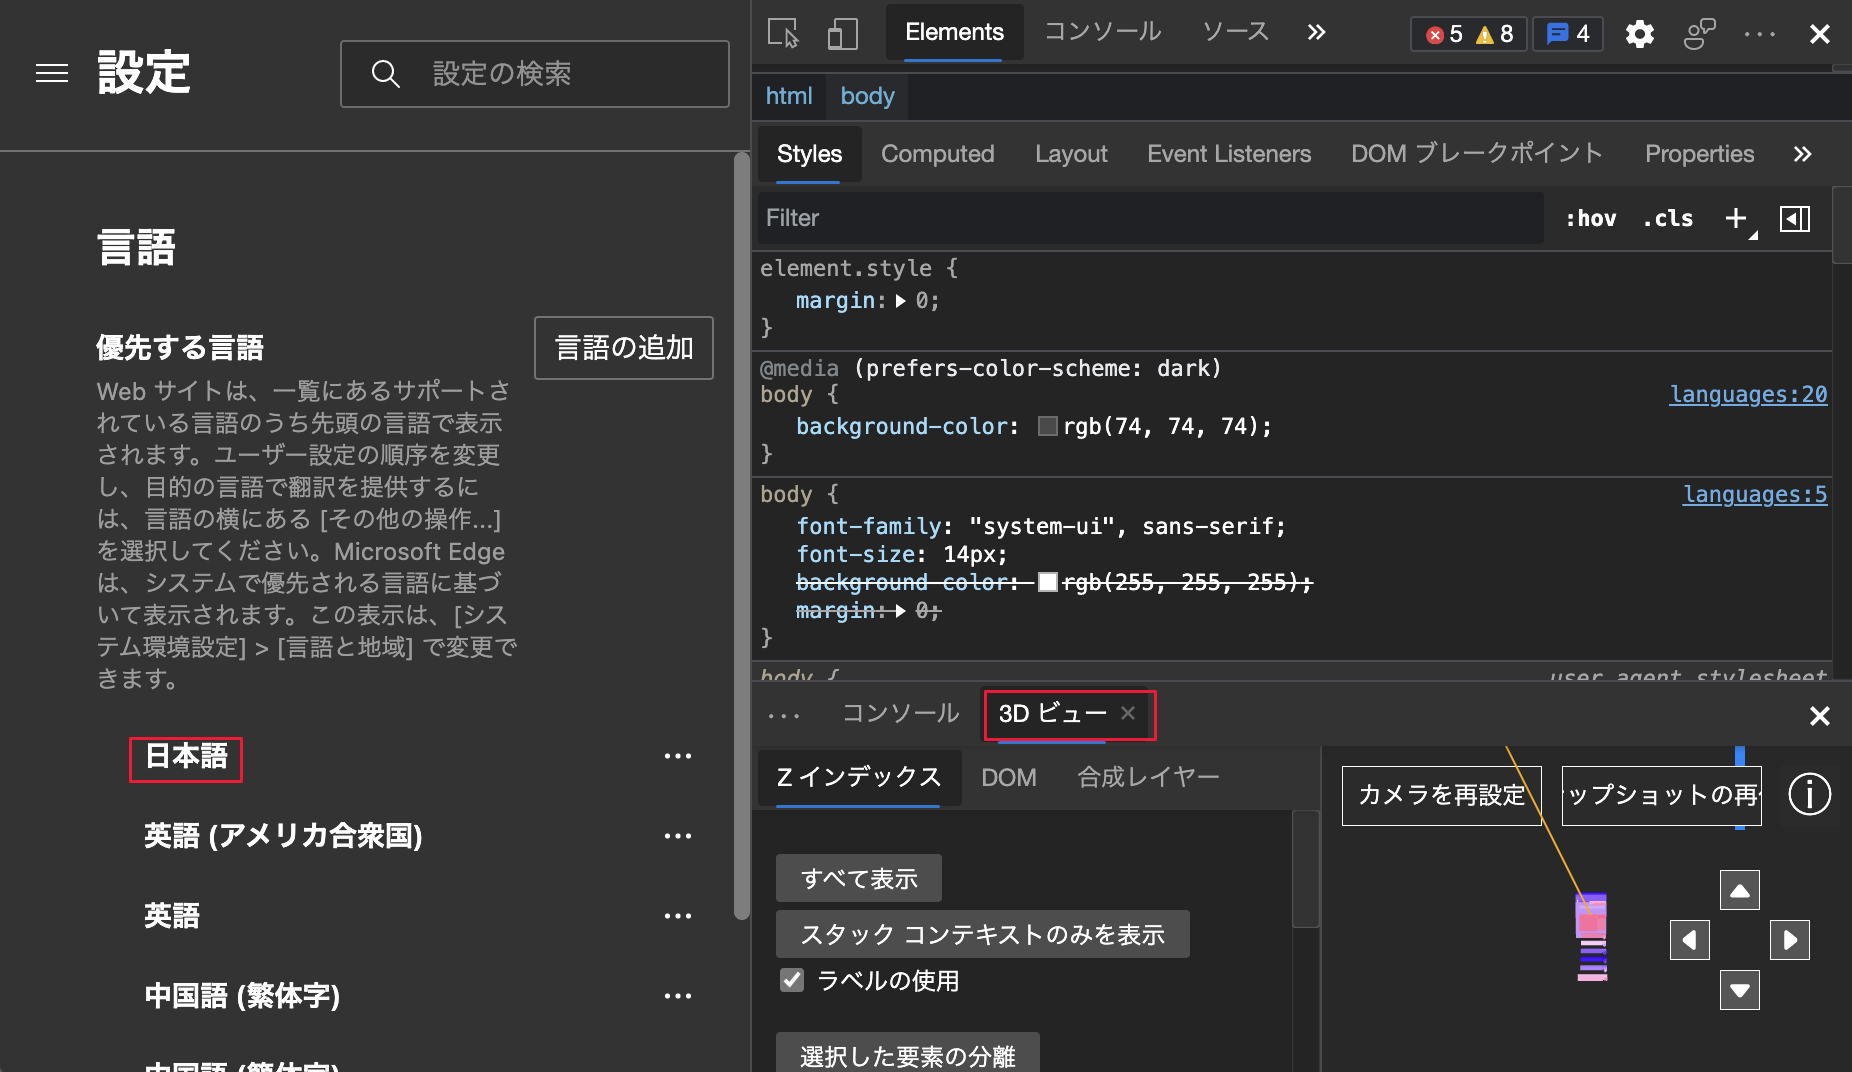 Explorador Microsoft Edge y DevTools establecidos en japonés